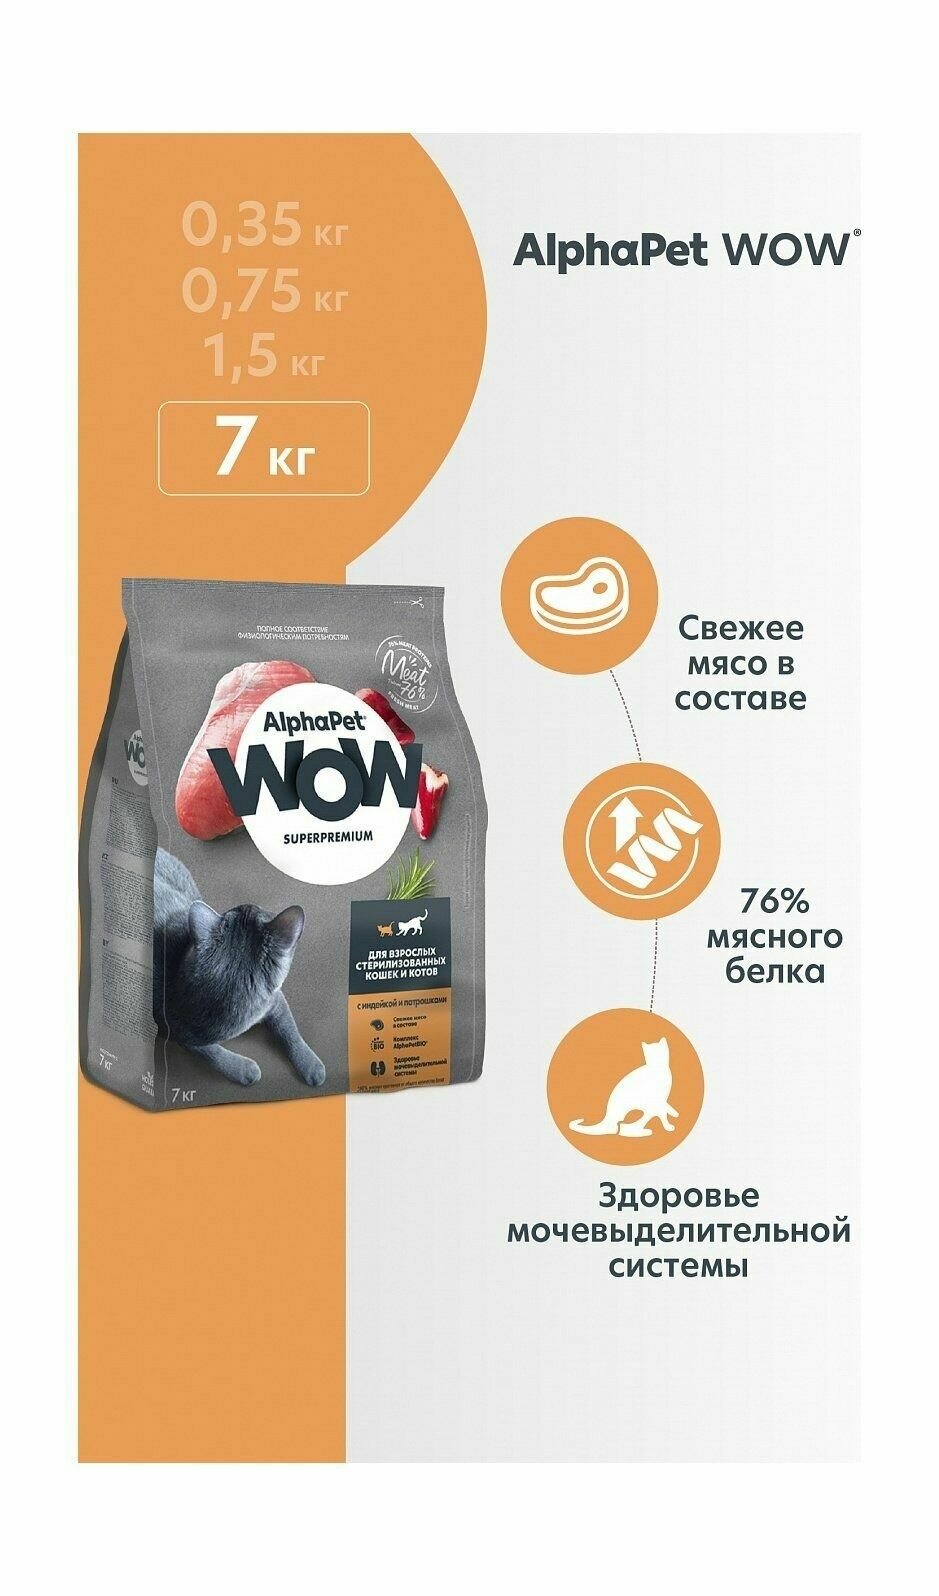 AlphaPet Wow - Сухой корм для взрослых стерилизованных котов и кошек, с Индейкой и Потрошками (7 кг)